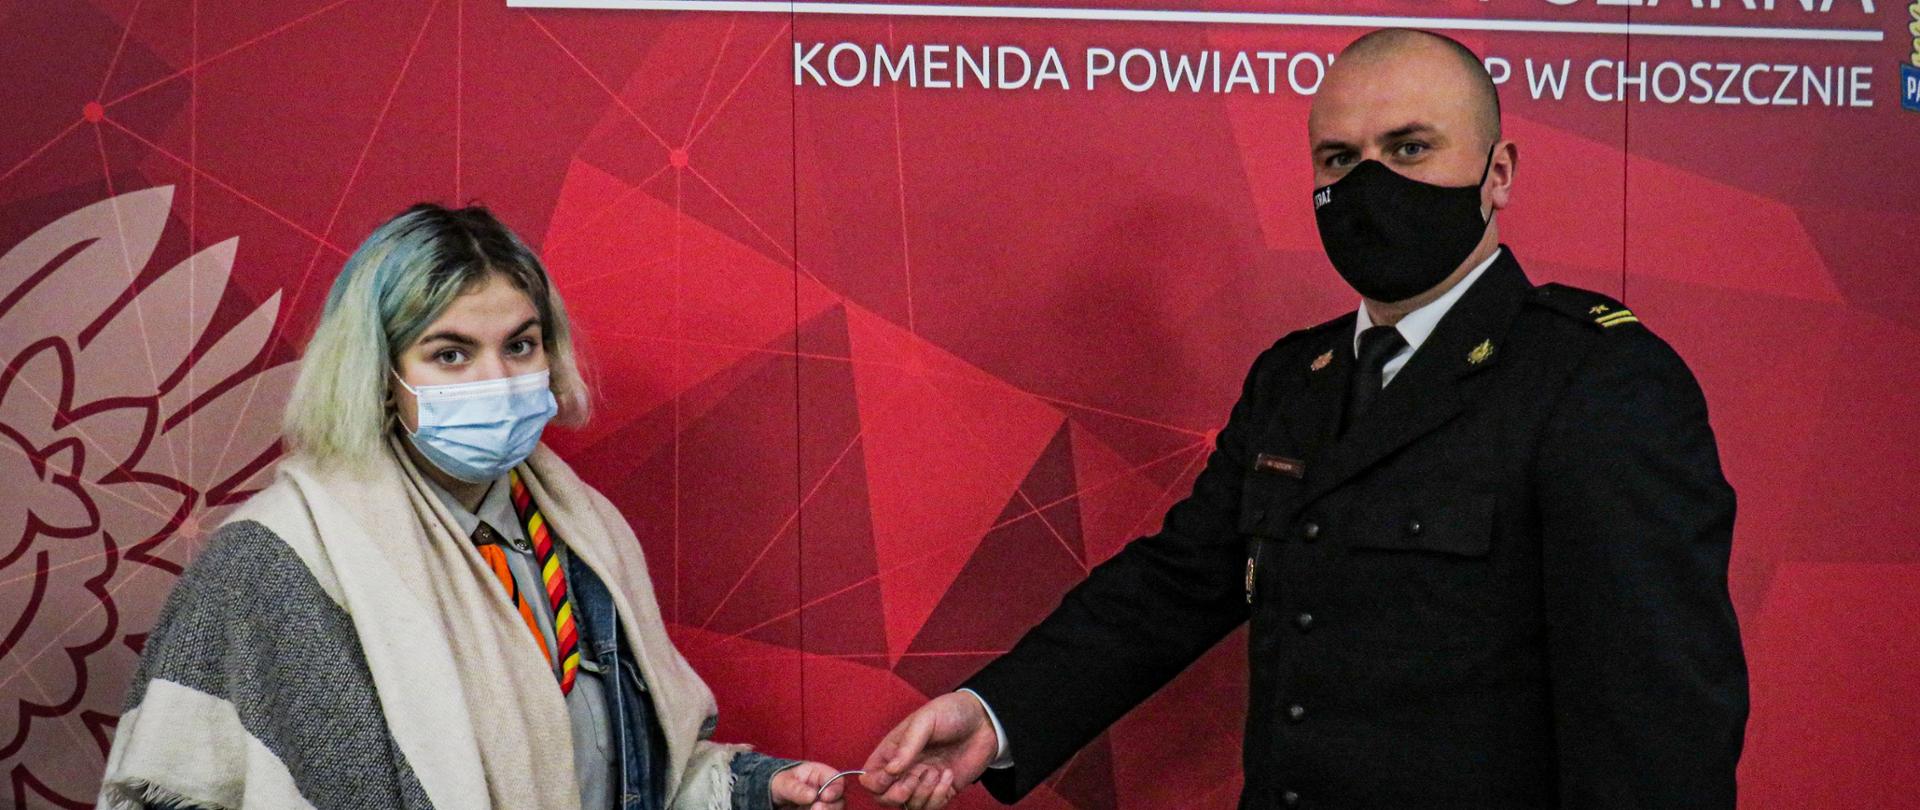 Na fotografii widzimy komendanta powiatowego psp w Choszcznie oraz harcerkę, którzy znajdują się na czerwonym tle z logiem psp. W rękach przekazują sobie lampion ze światłem pokoju.